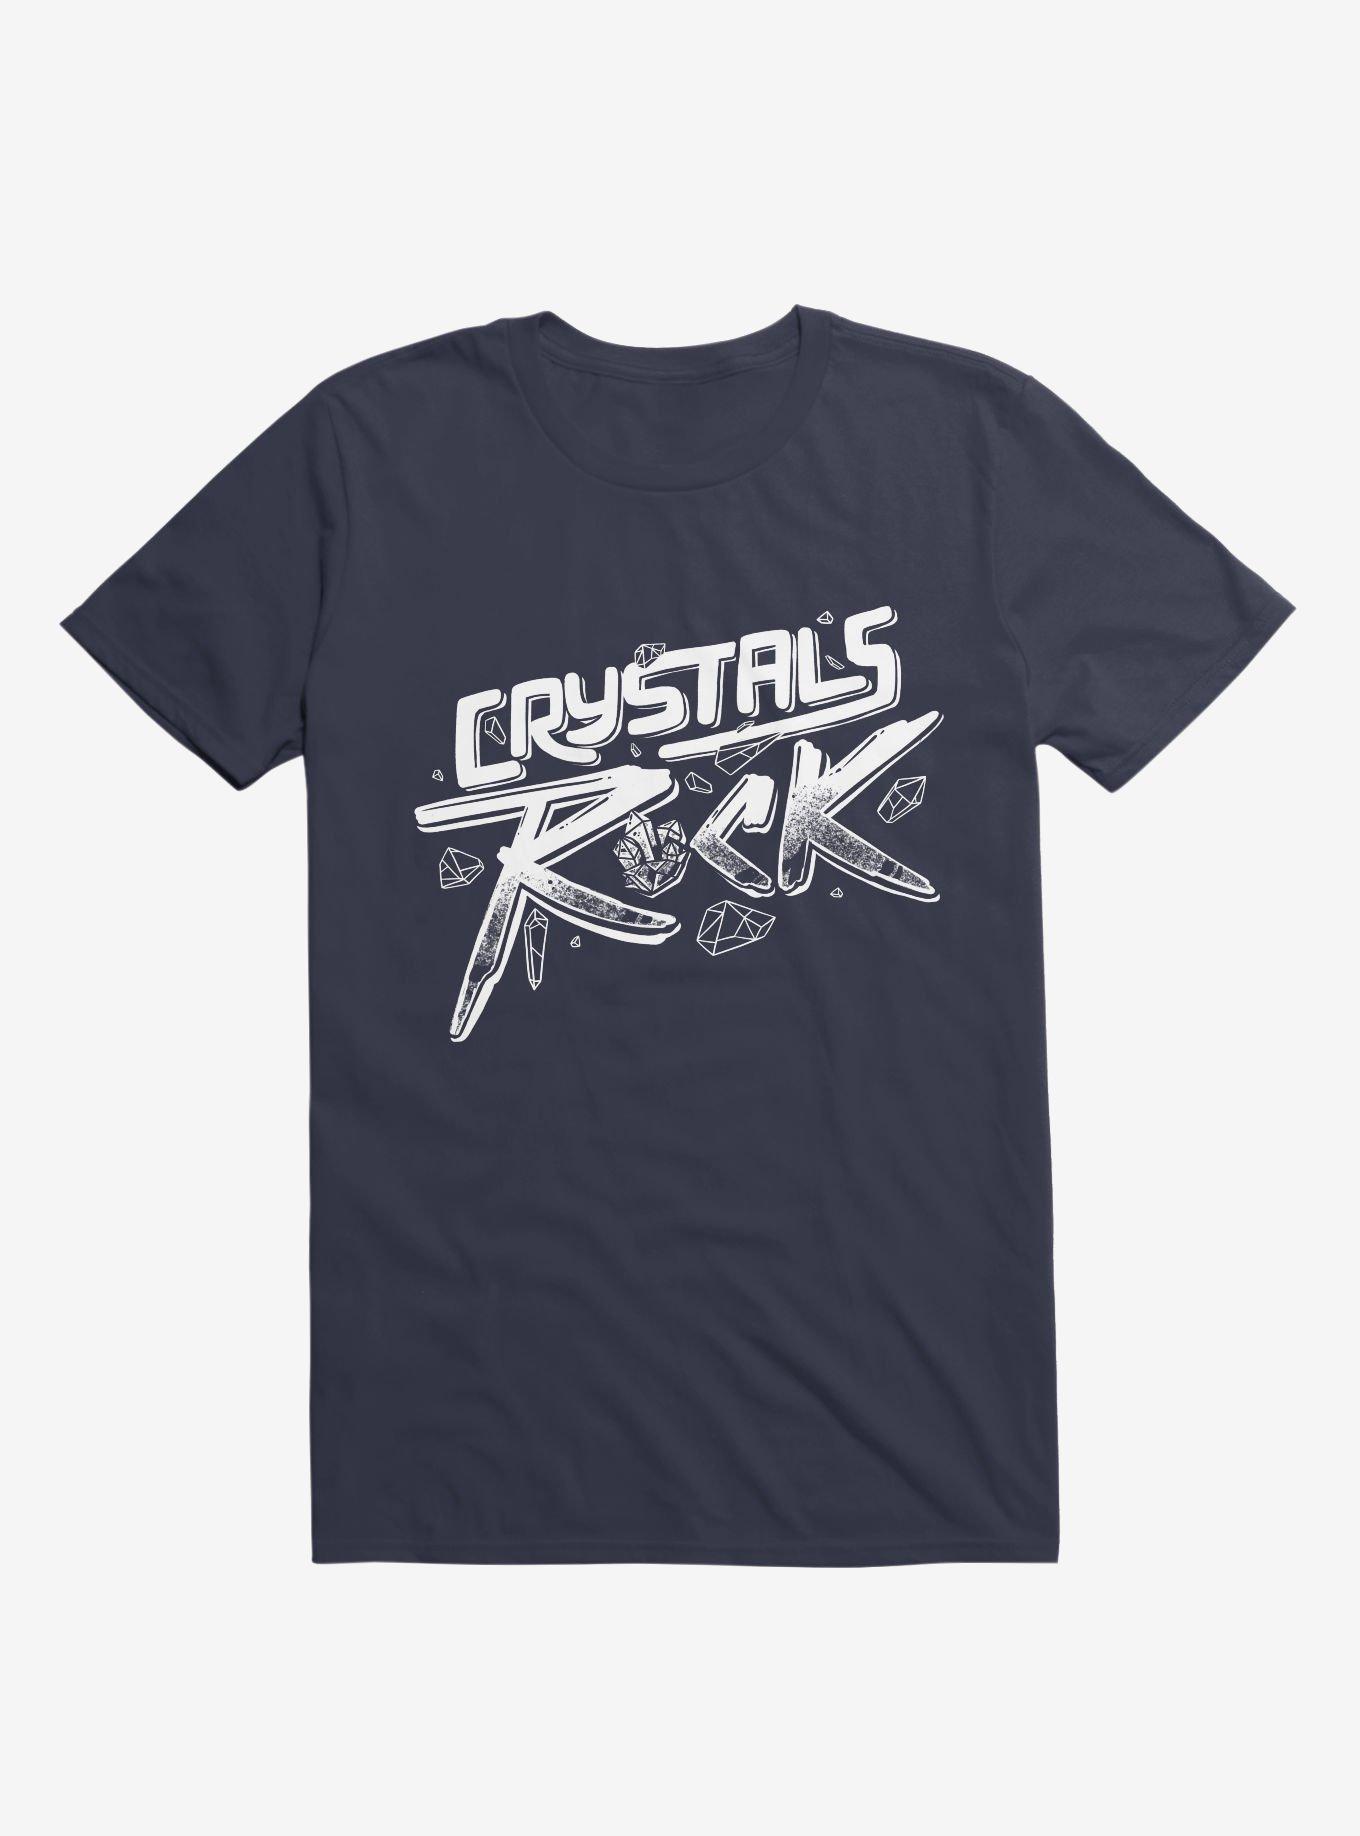 Crystals ROCK! T-Shirt, NAVY, hi-res